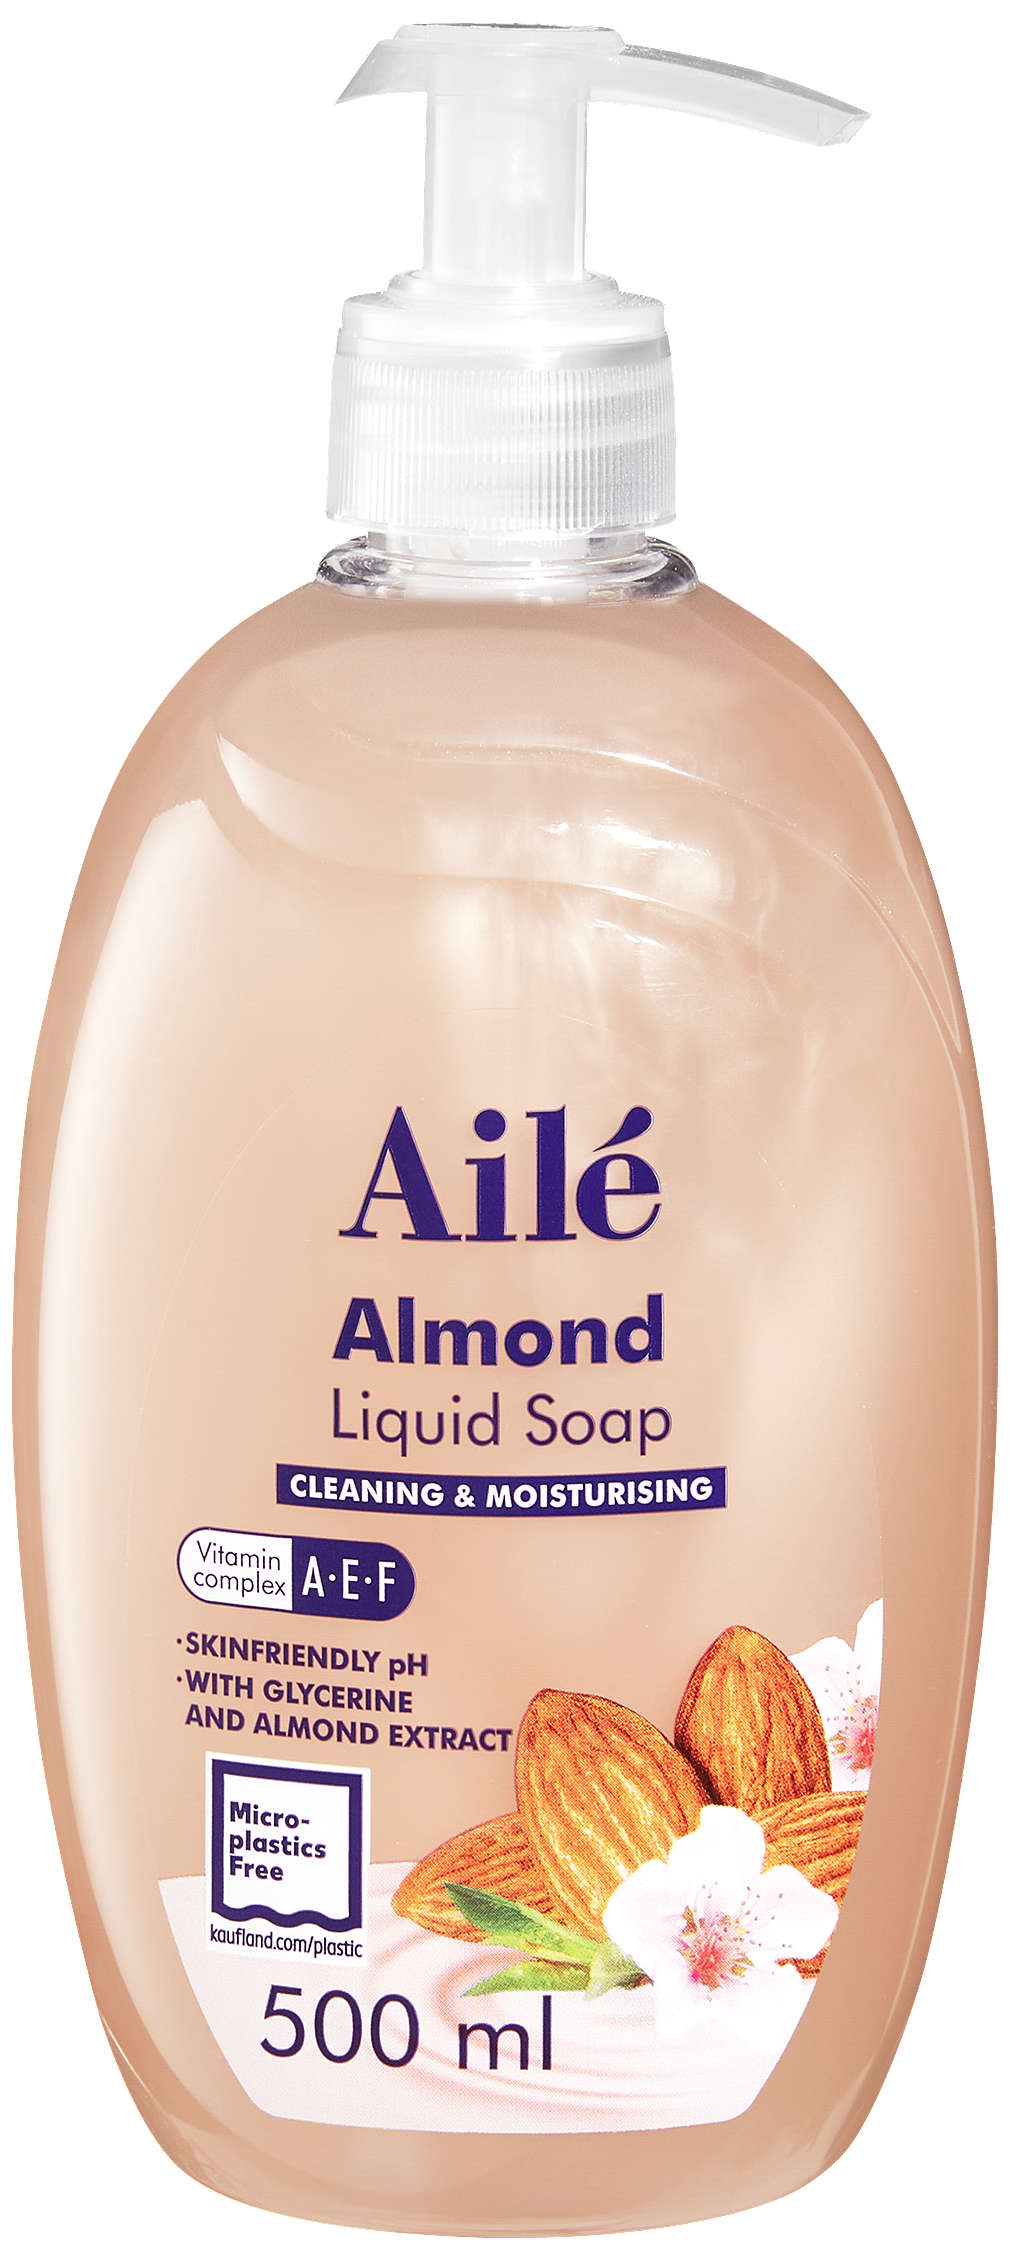 Fotografija ponude Aile tekući sapun